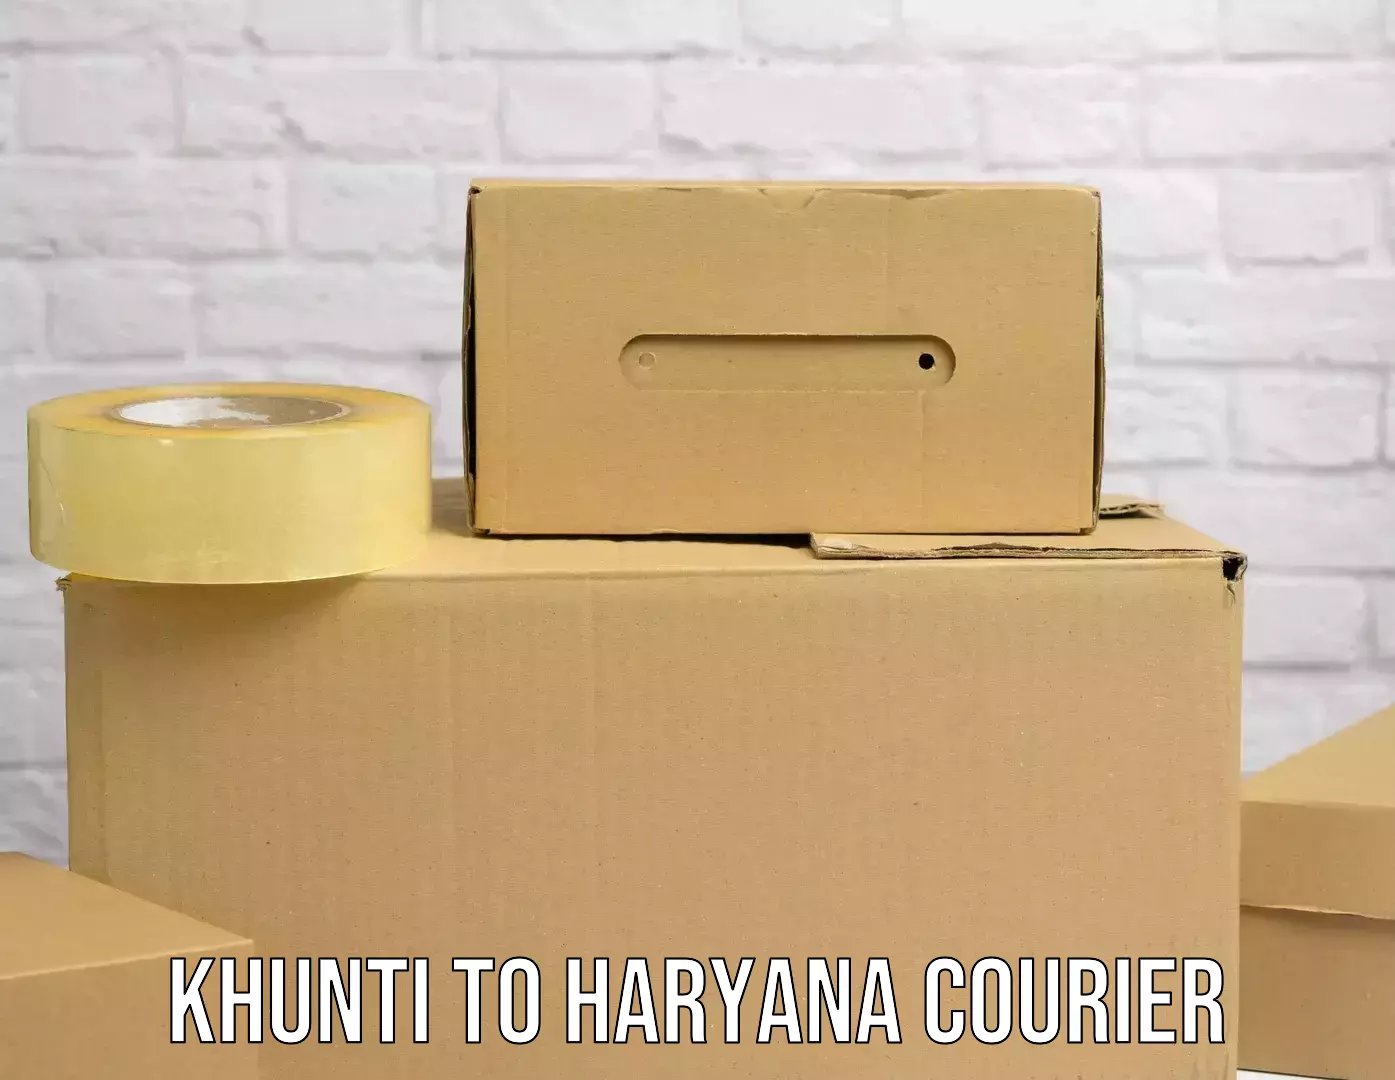 Digital courier platforms Khunti to Hansi